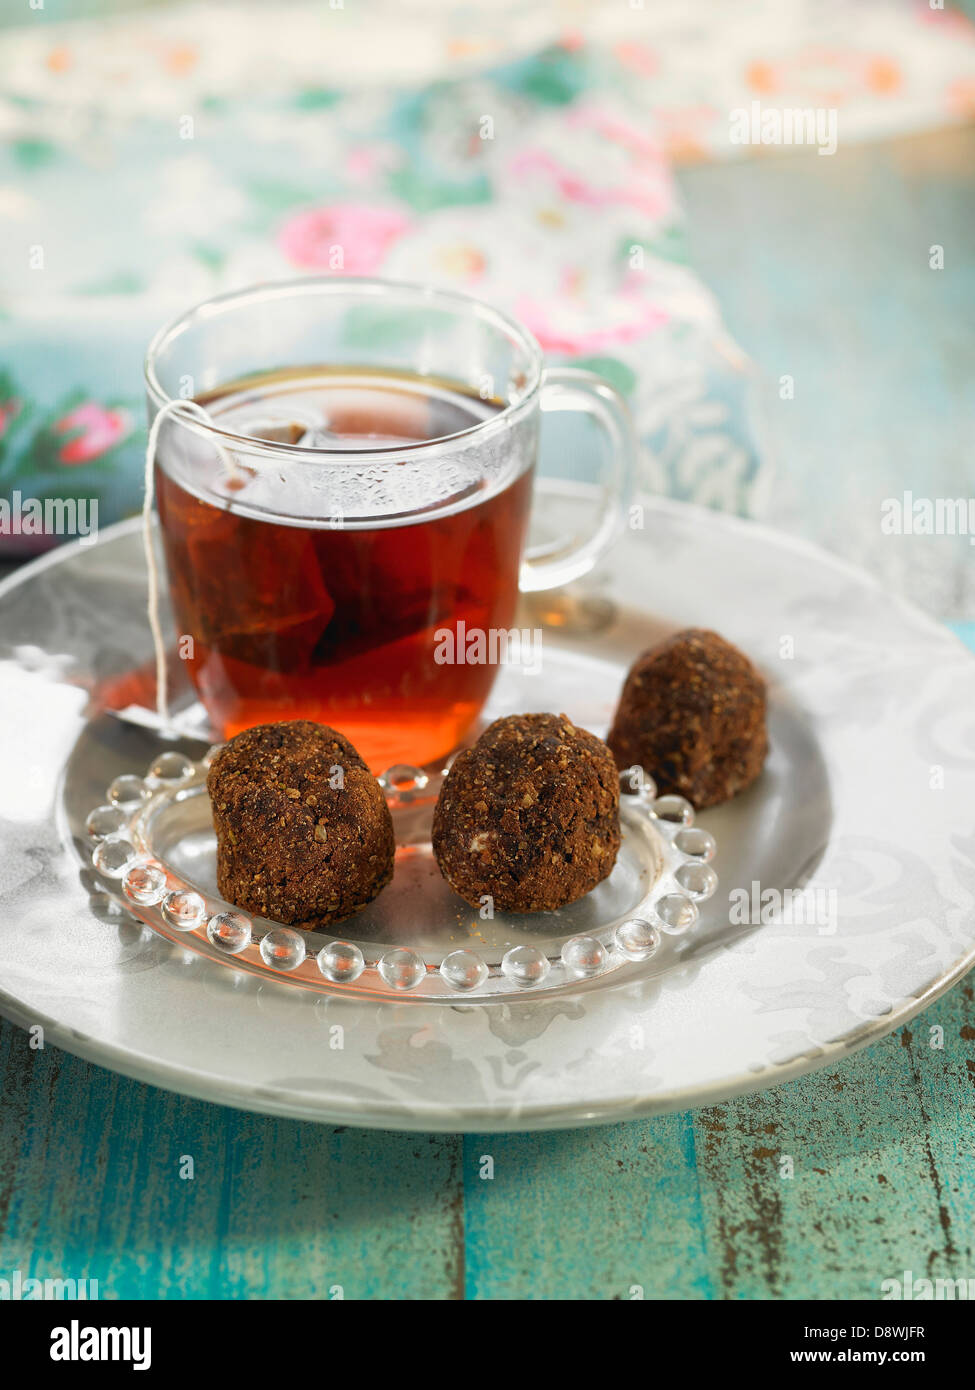 Haferflocken, Bockshornklee und Carouba Mehl Trüffel mit einer Tasse Tee Stockfoto